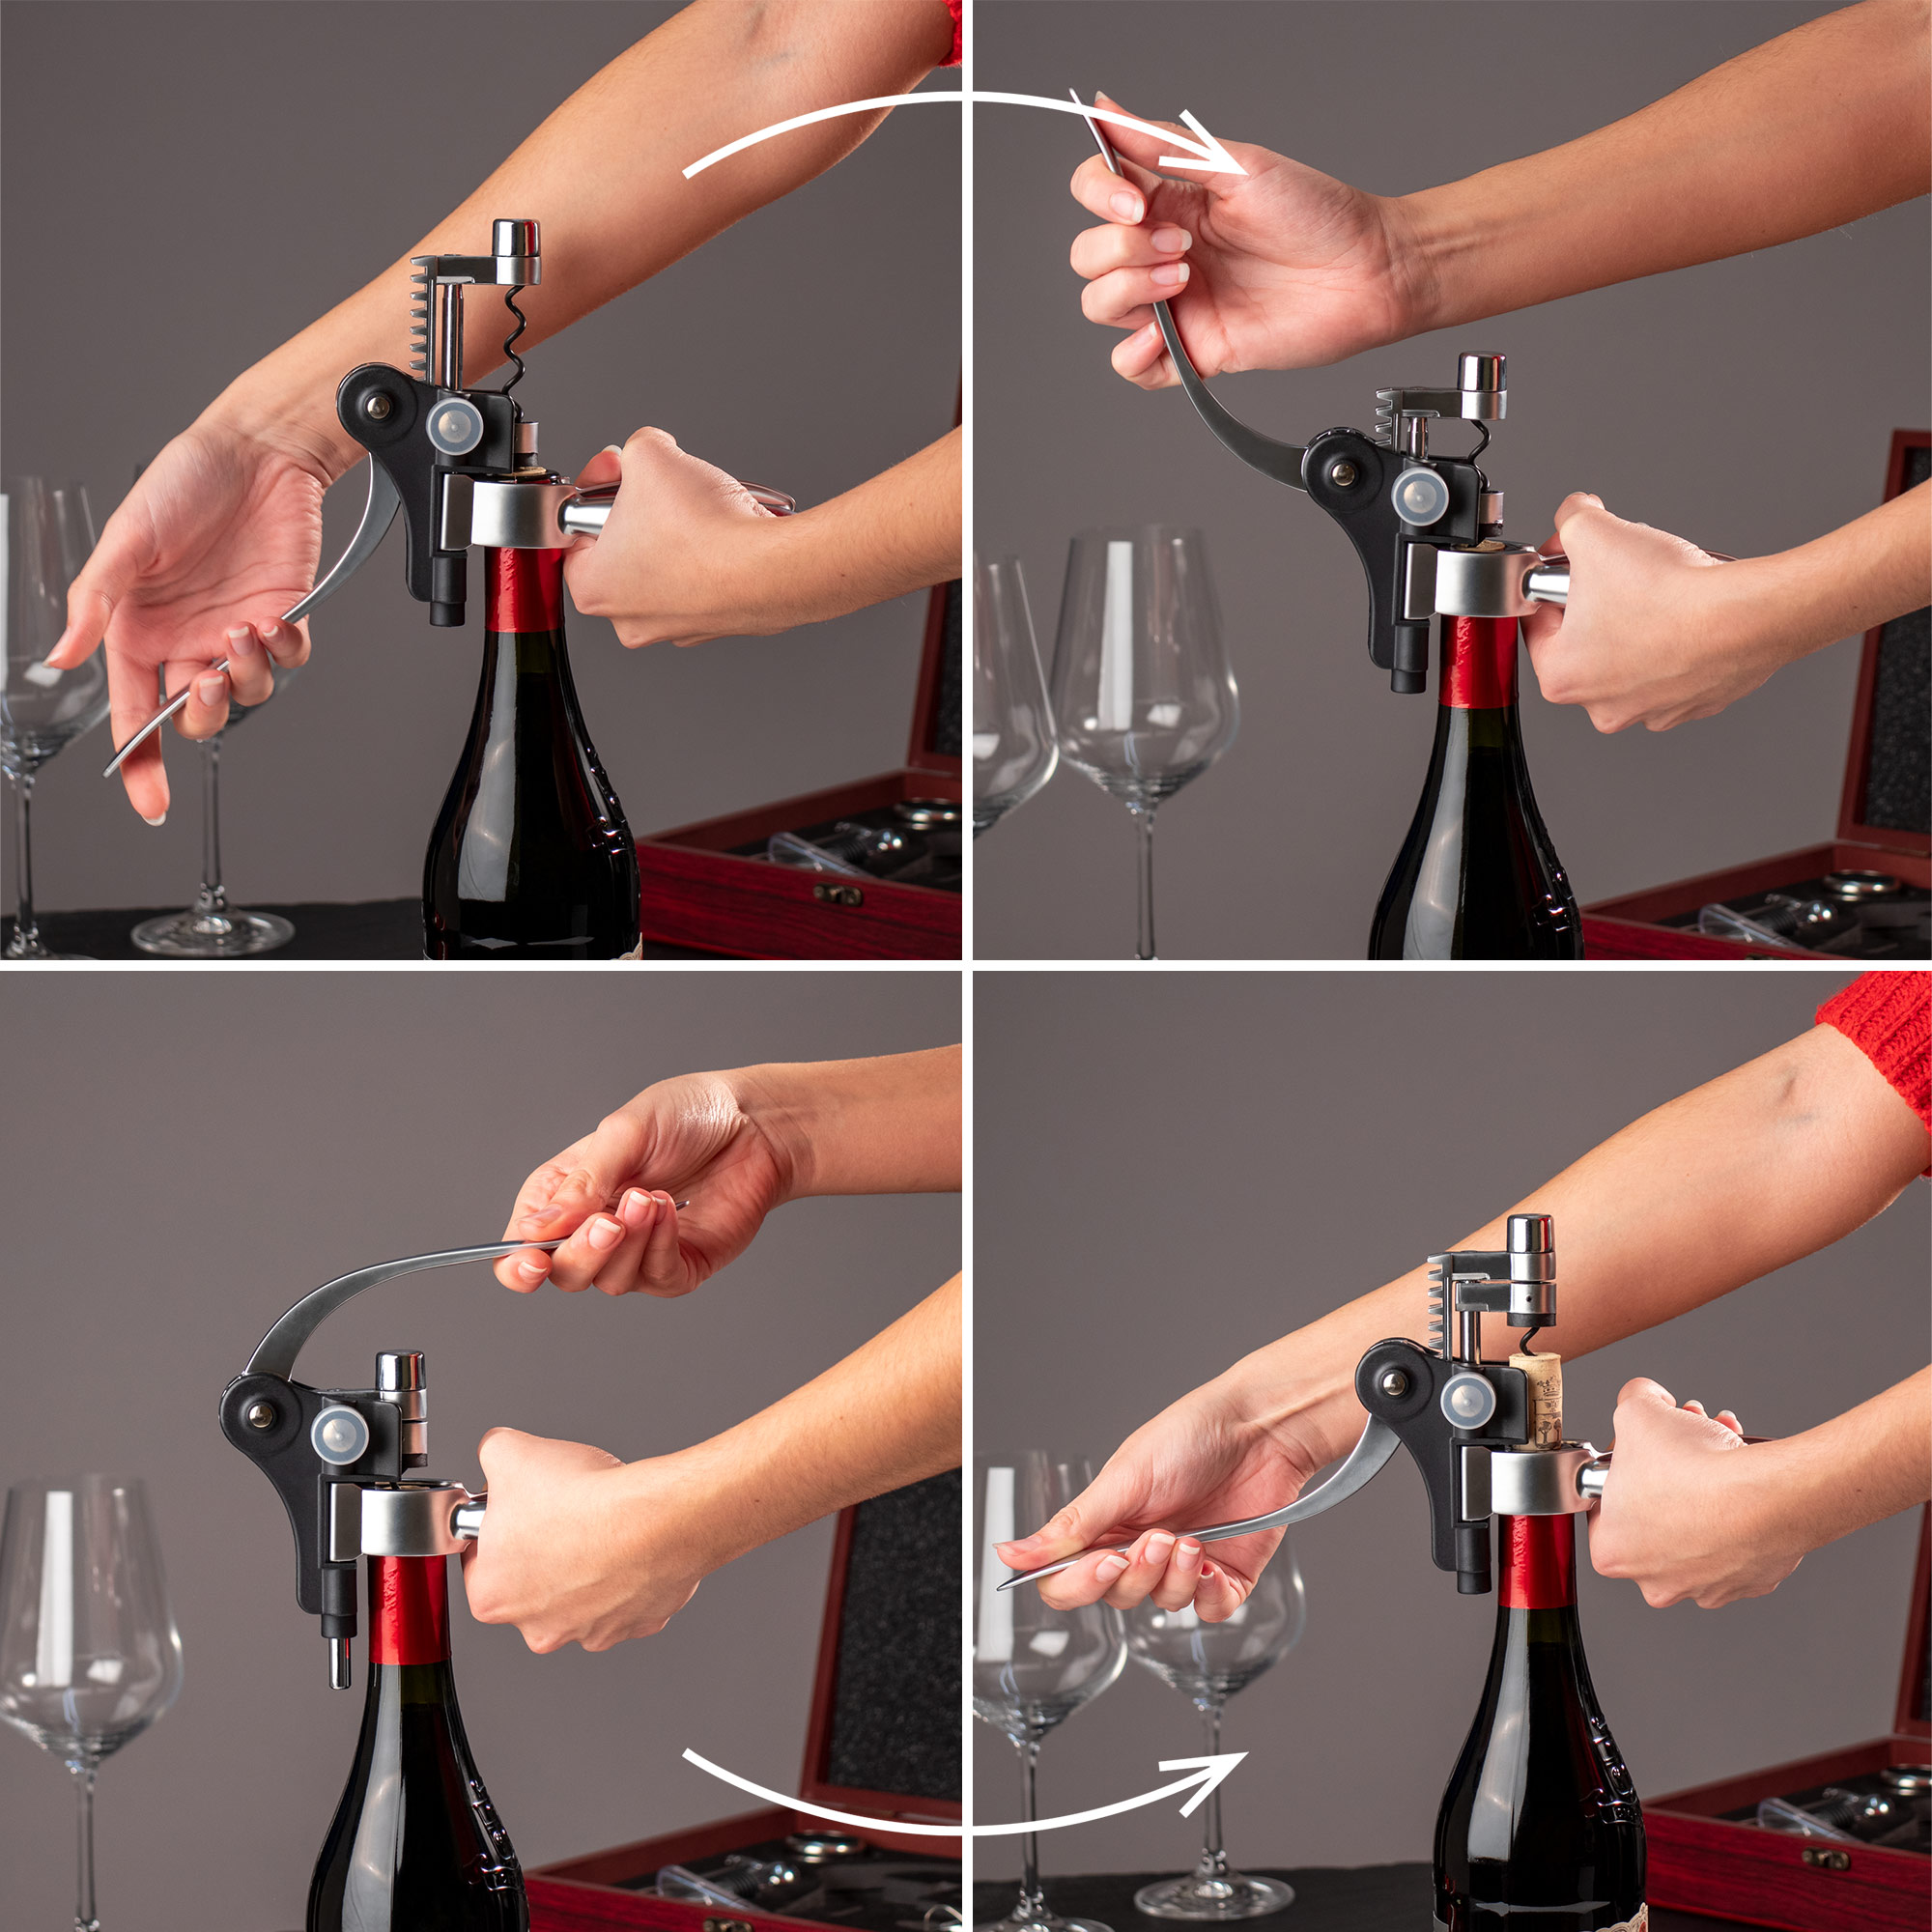 Personalisiertes Wein Sommelier Set mit Gravur - Kompass